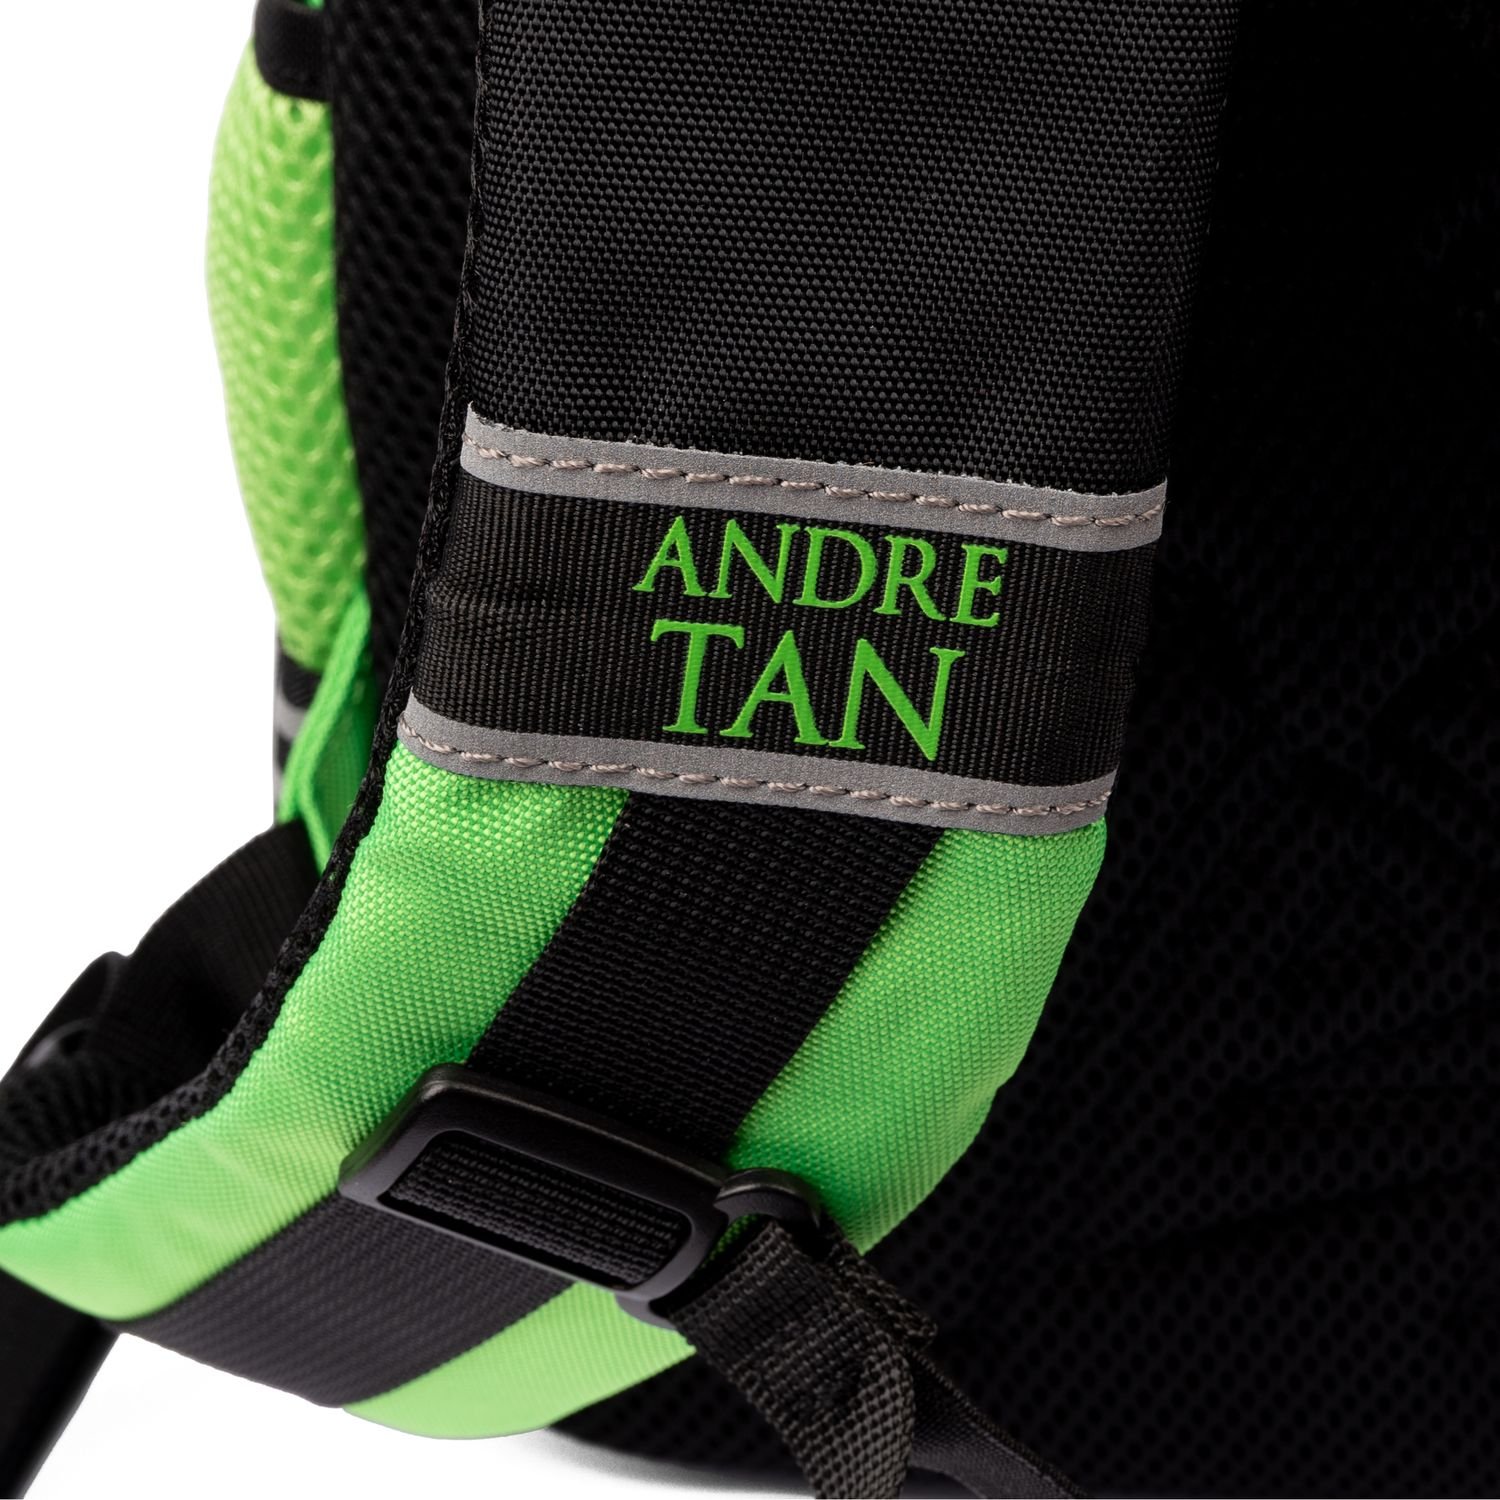 Рюкзак Yes T-129 Andre Tan Hand green (559042) - фото 15